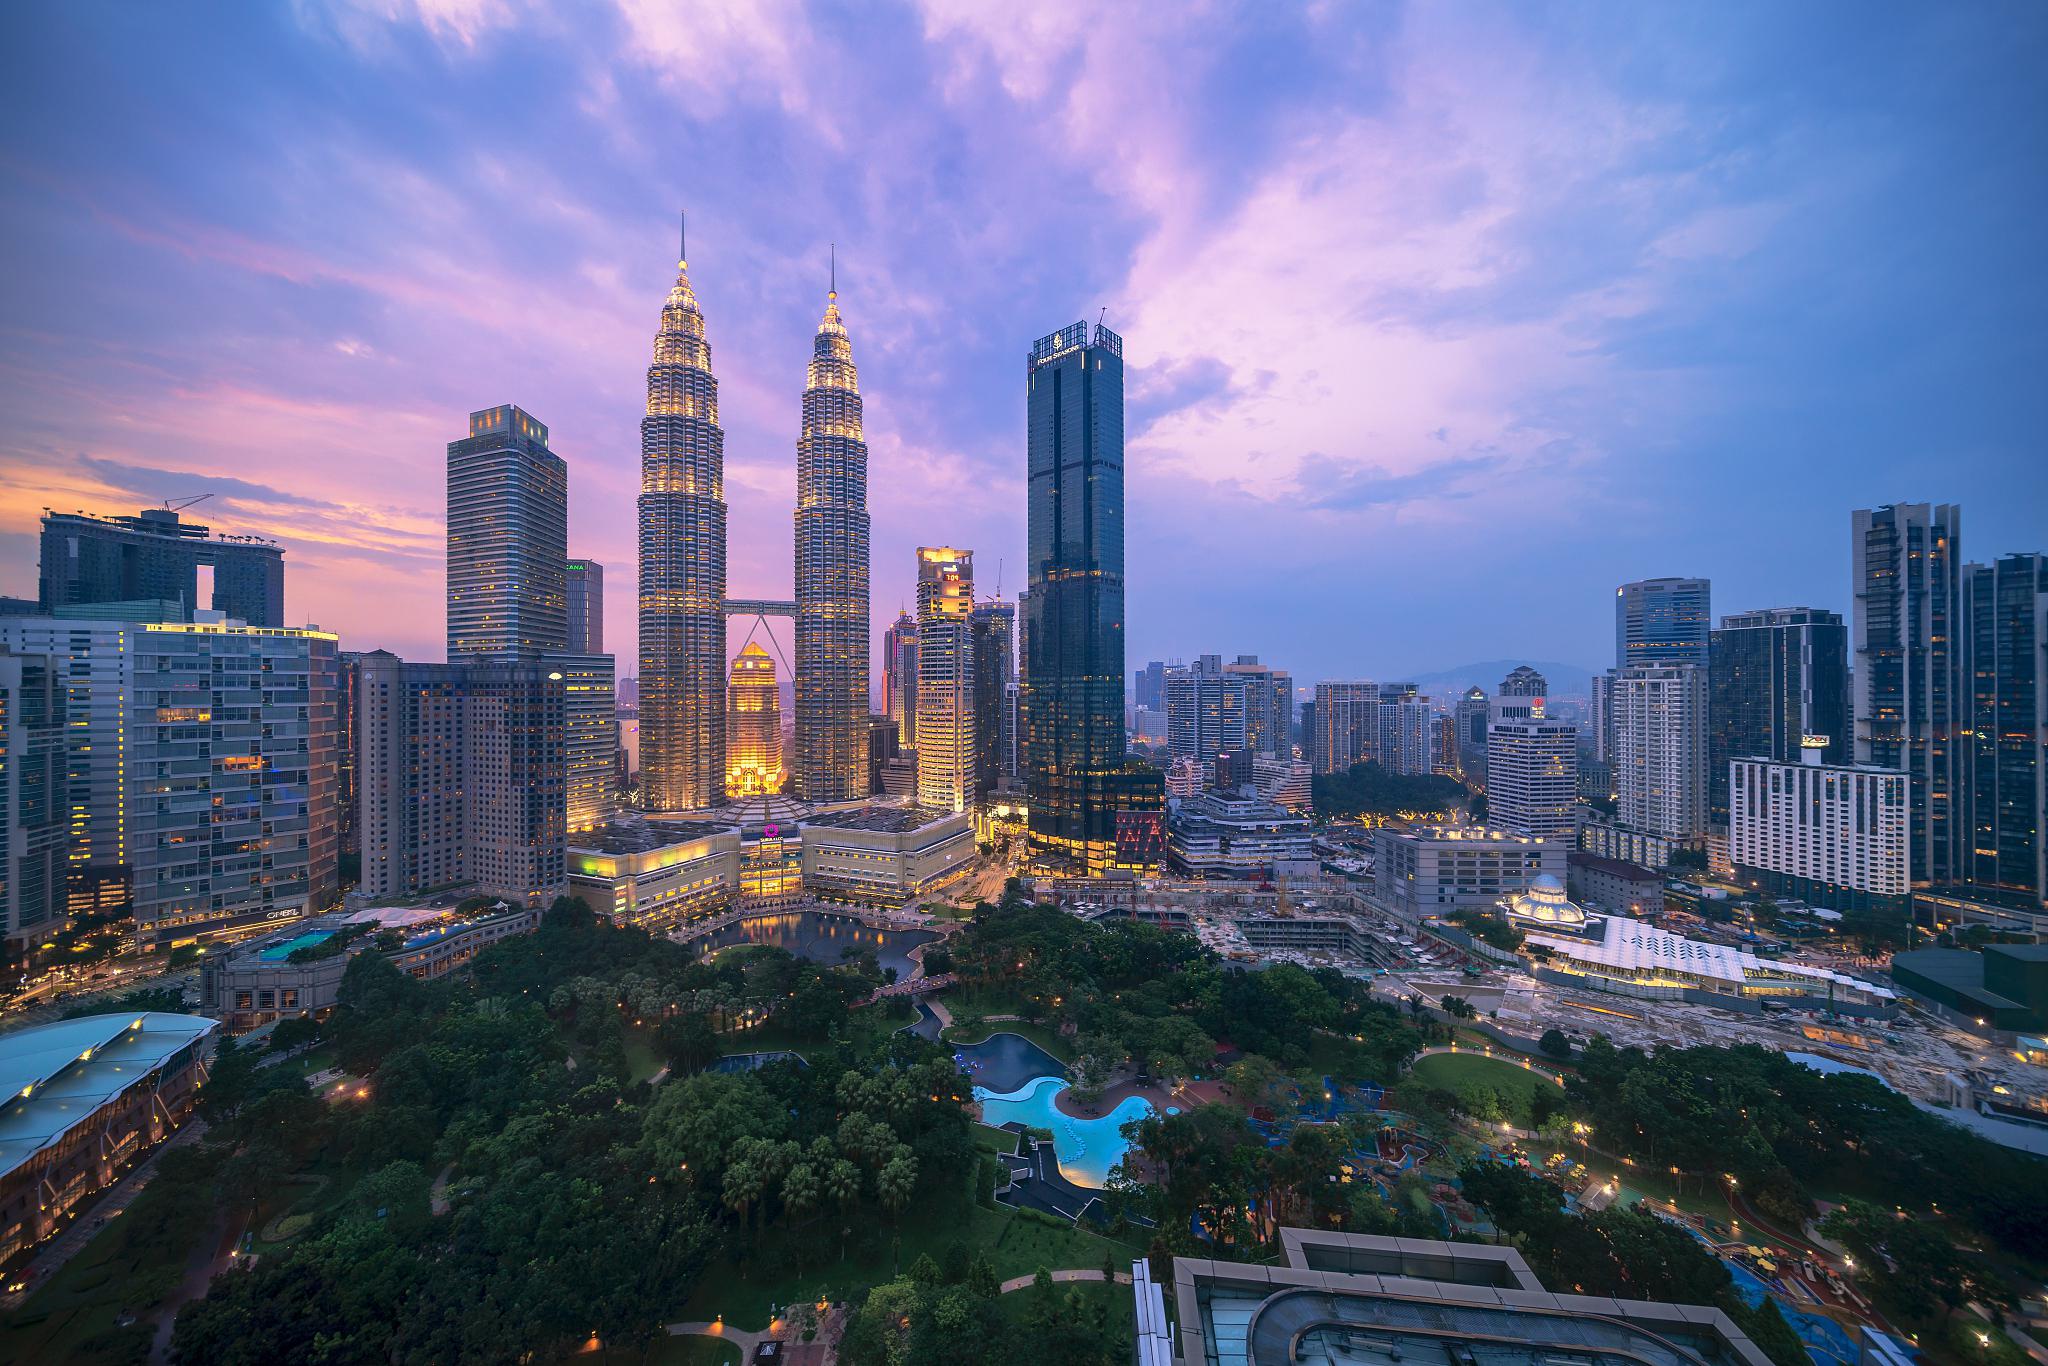 马来西亚必去的热门景点 马来西亚,这个充满热带风情的国家,拥有丰富